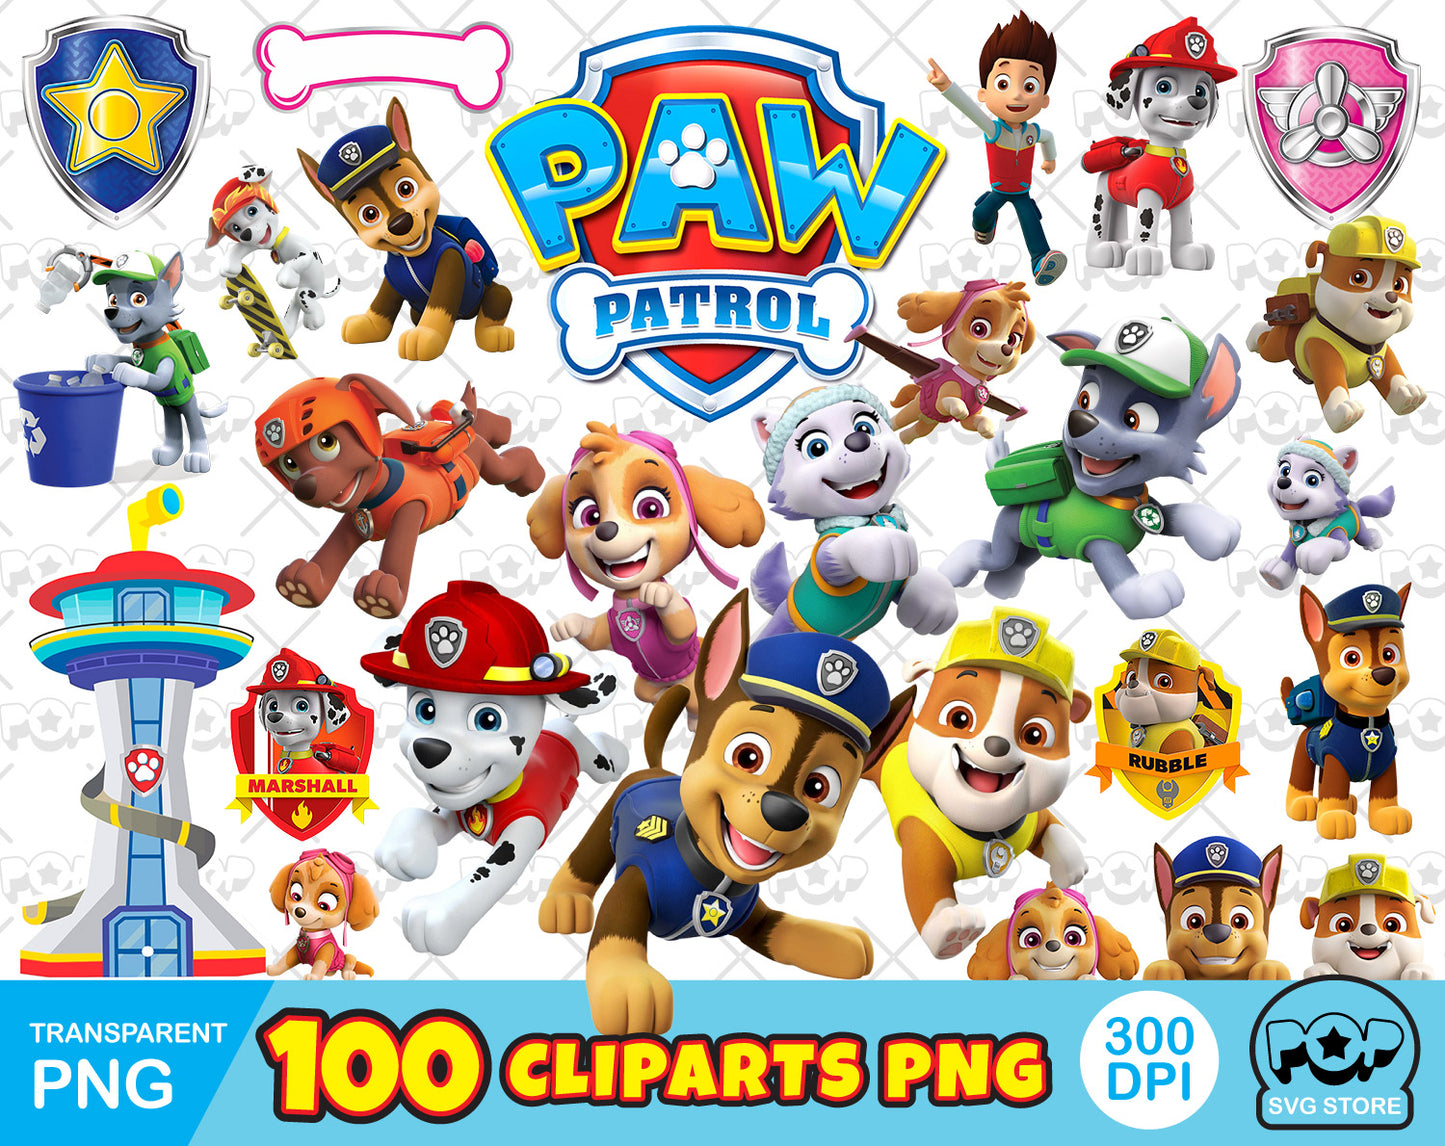 Paw Patrol 100 cliparts bundle, transparent PNG, designs for decoration / sublimation, instant download